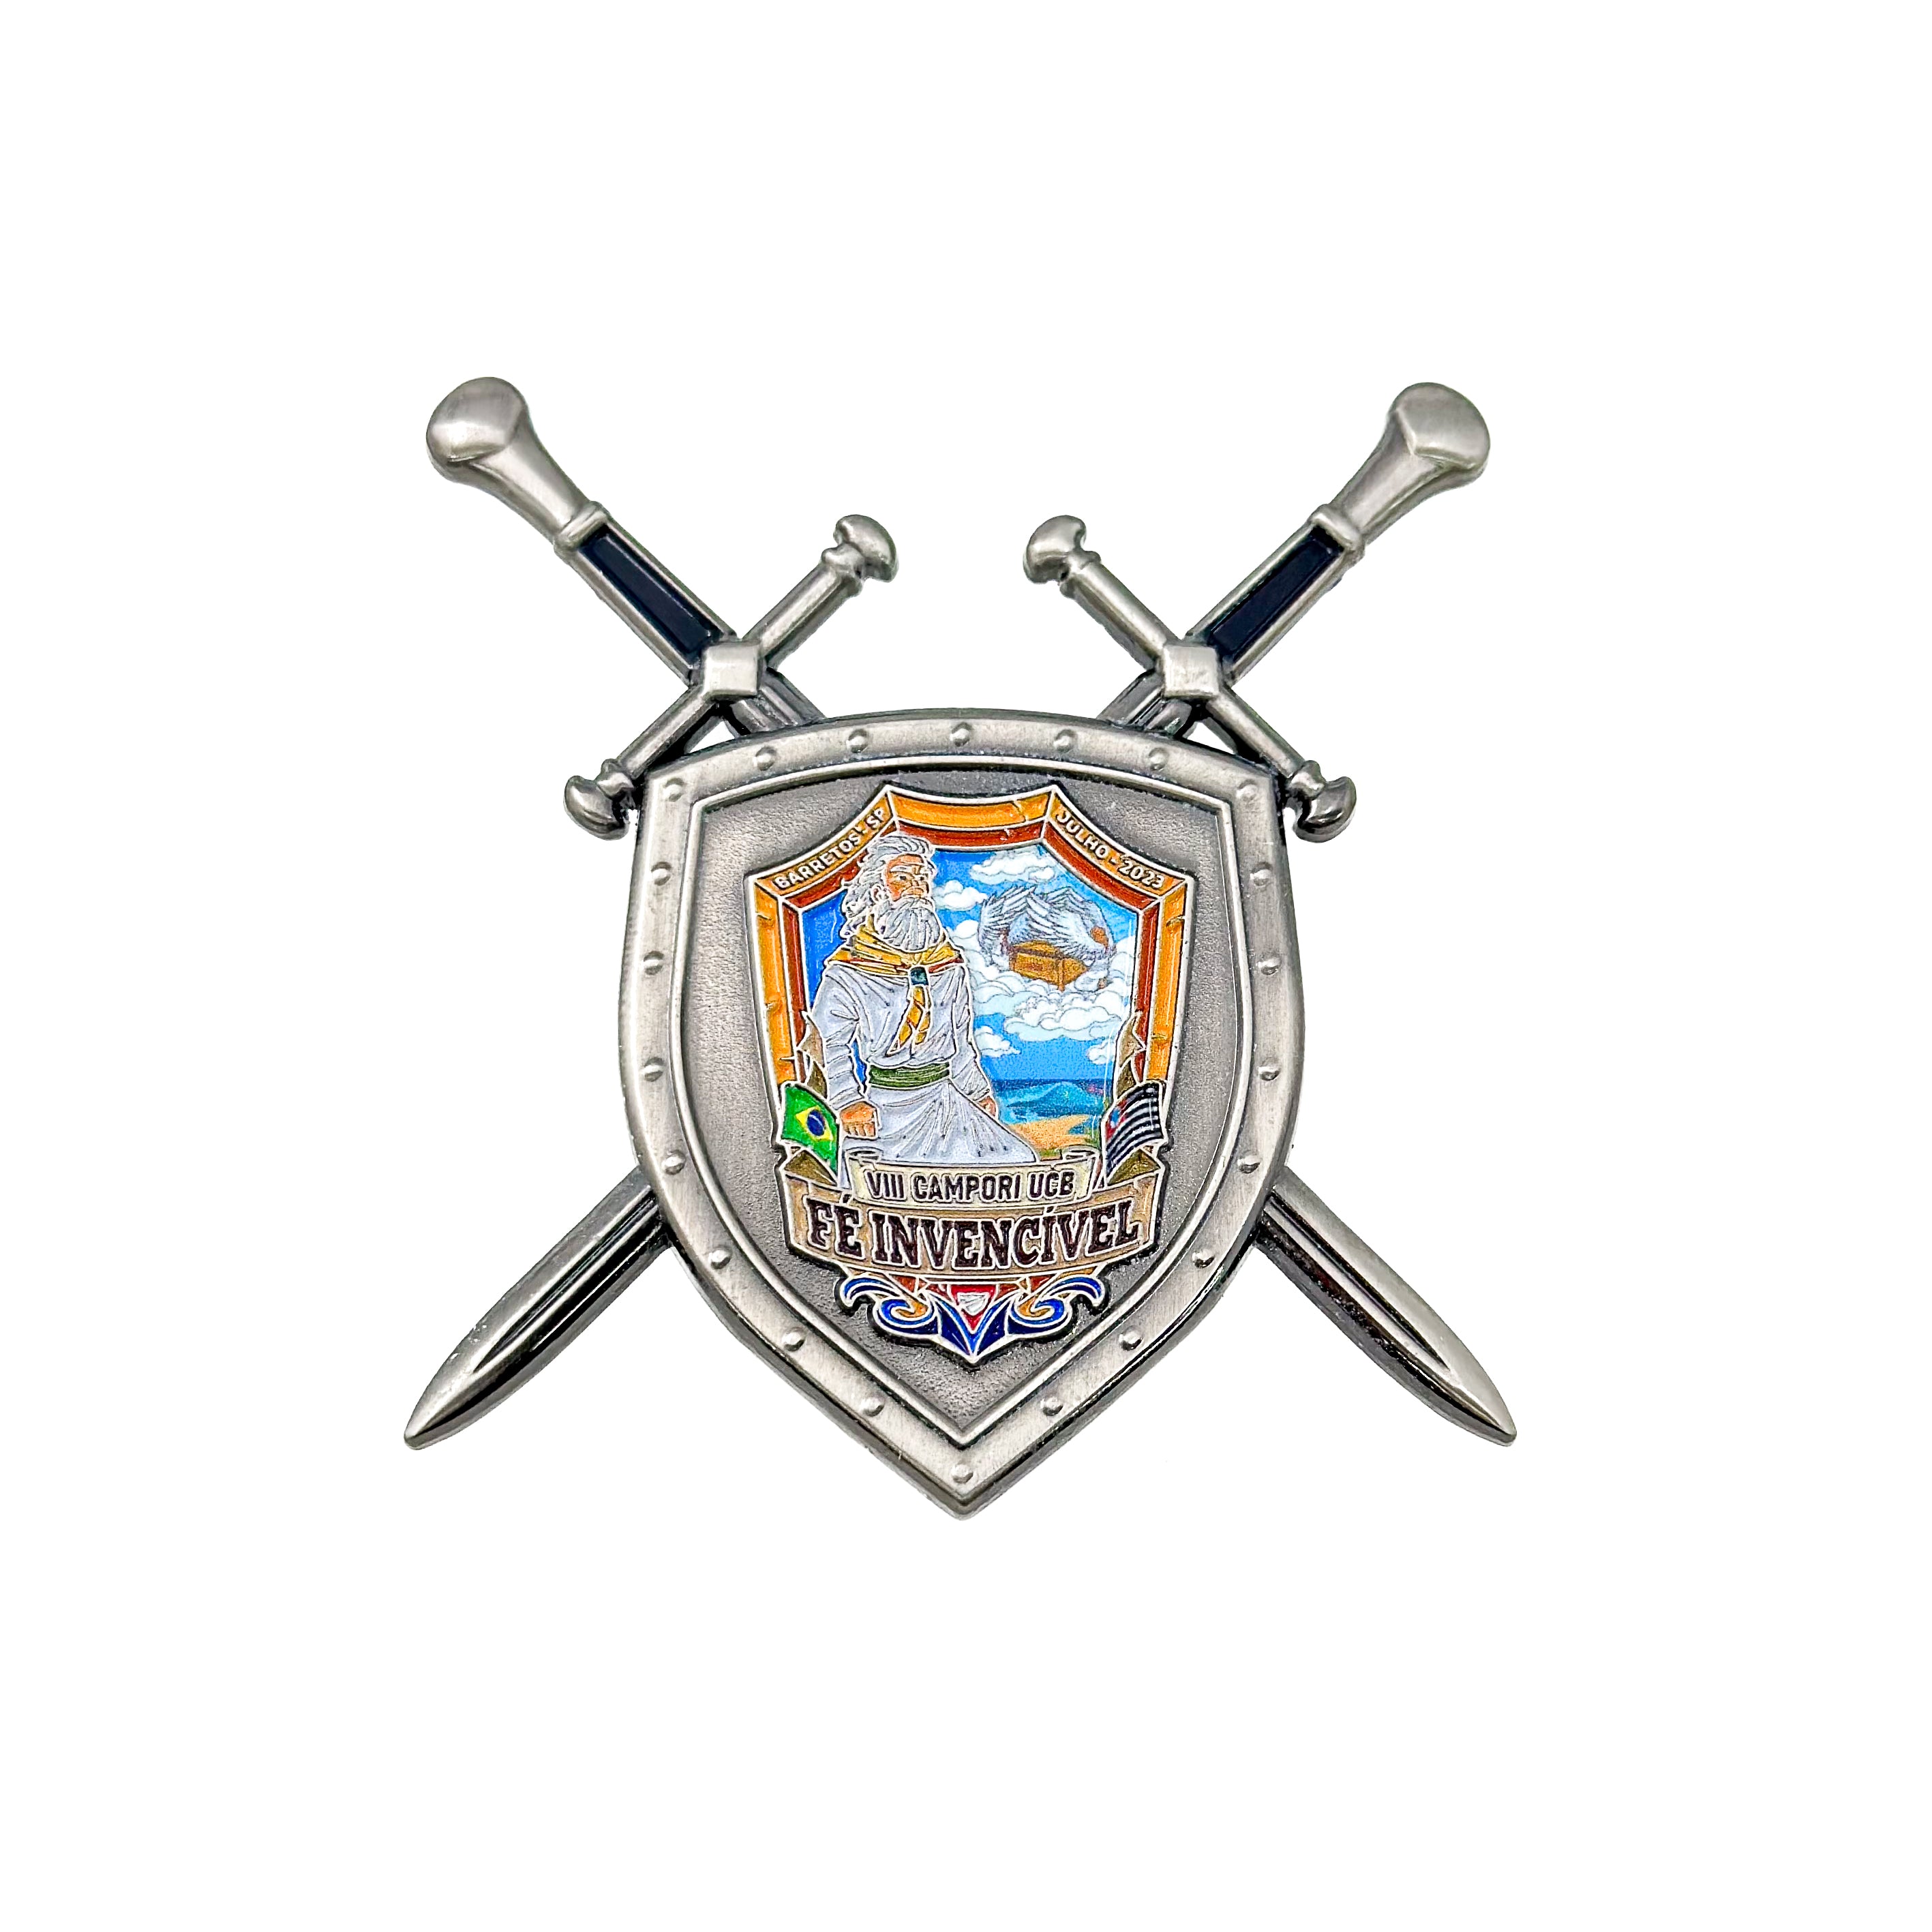 UCB Camporee "Fé Invencível" Sword & Shield Pin